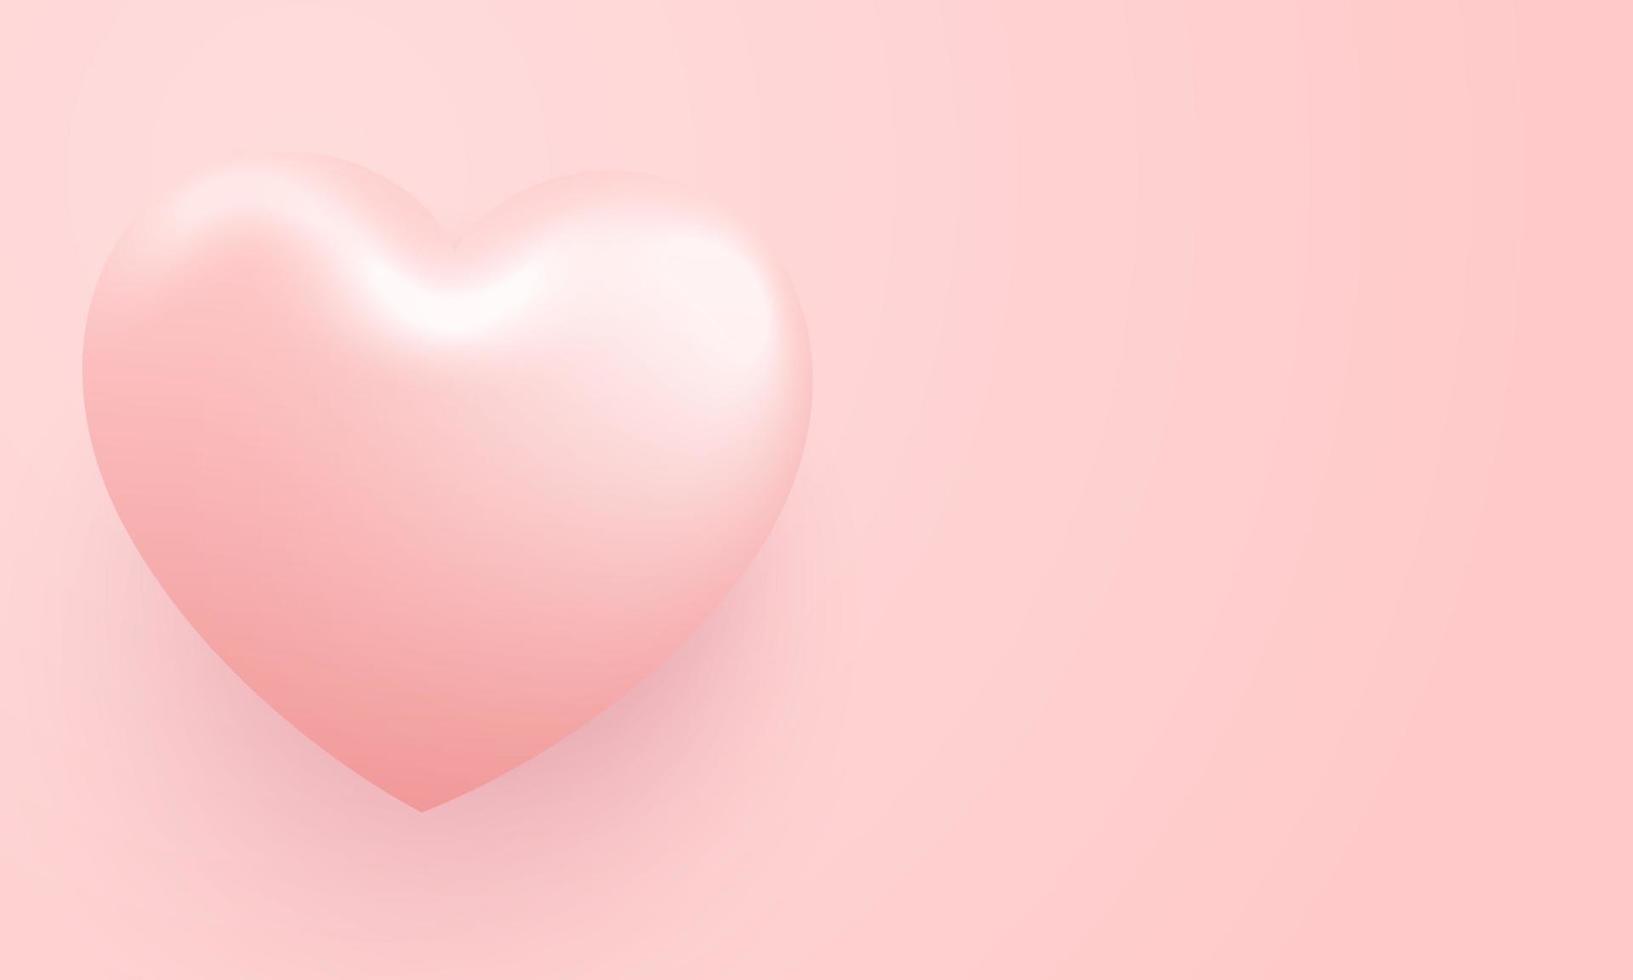 amo ilustração de fundo feliz dia dos namorados. fundo rosa lindo com coração grande realista vetor